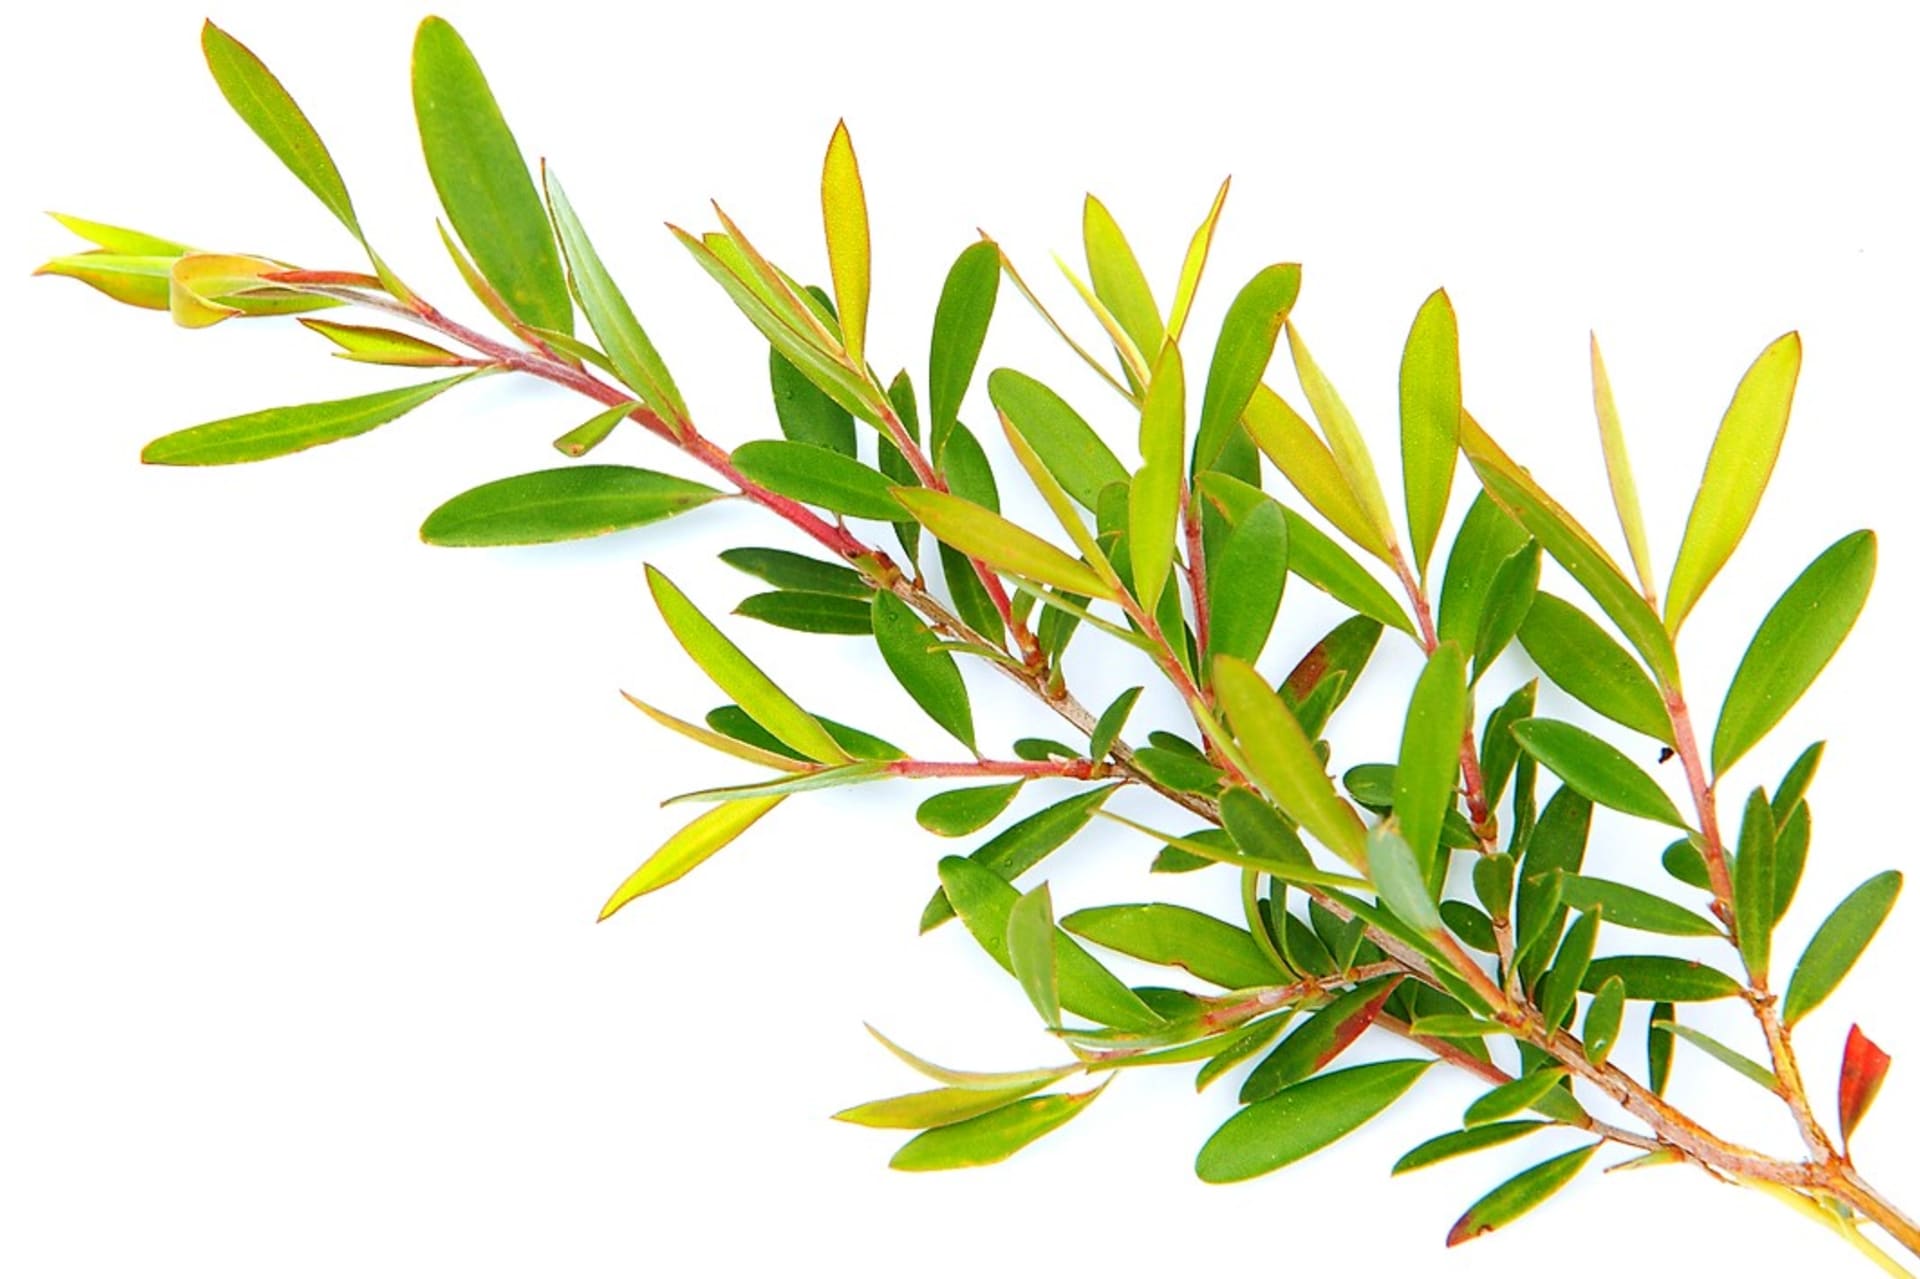 Pravý olej tea tree je pouze ten, který pochází z listů kajeputu střídavolistého (Melaleuca alternifolia), kerému se běžně říká čajovník australský, přestože s čajovníkem nemá nic společného.